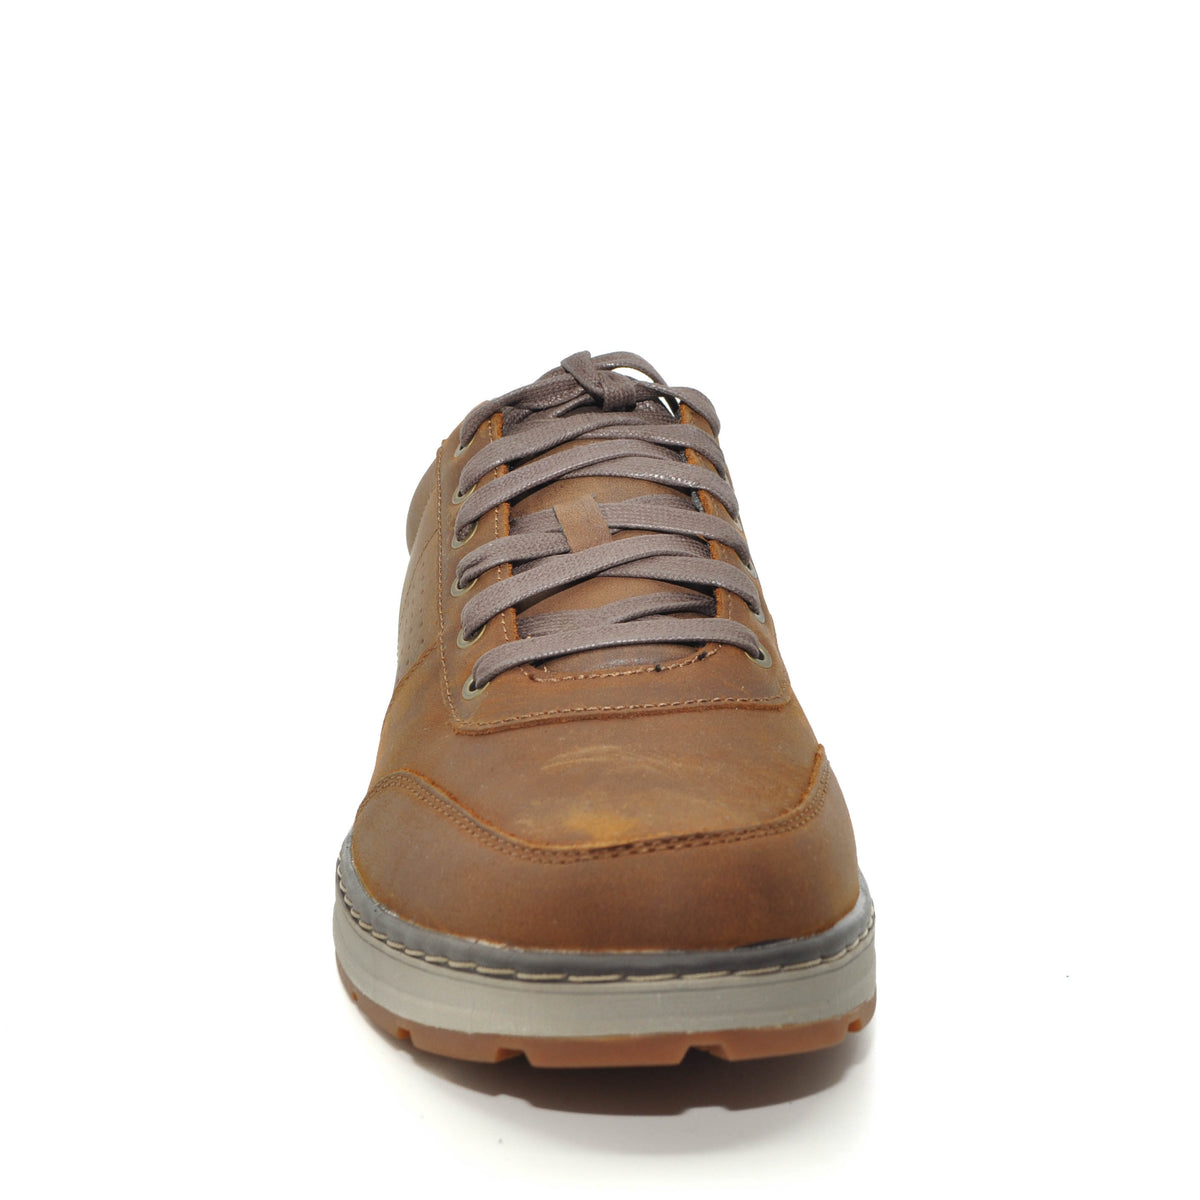 SKECHERS shoes online ireland | lifestyle shoes ireland